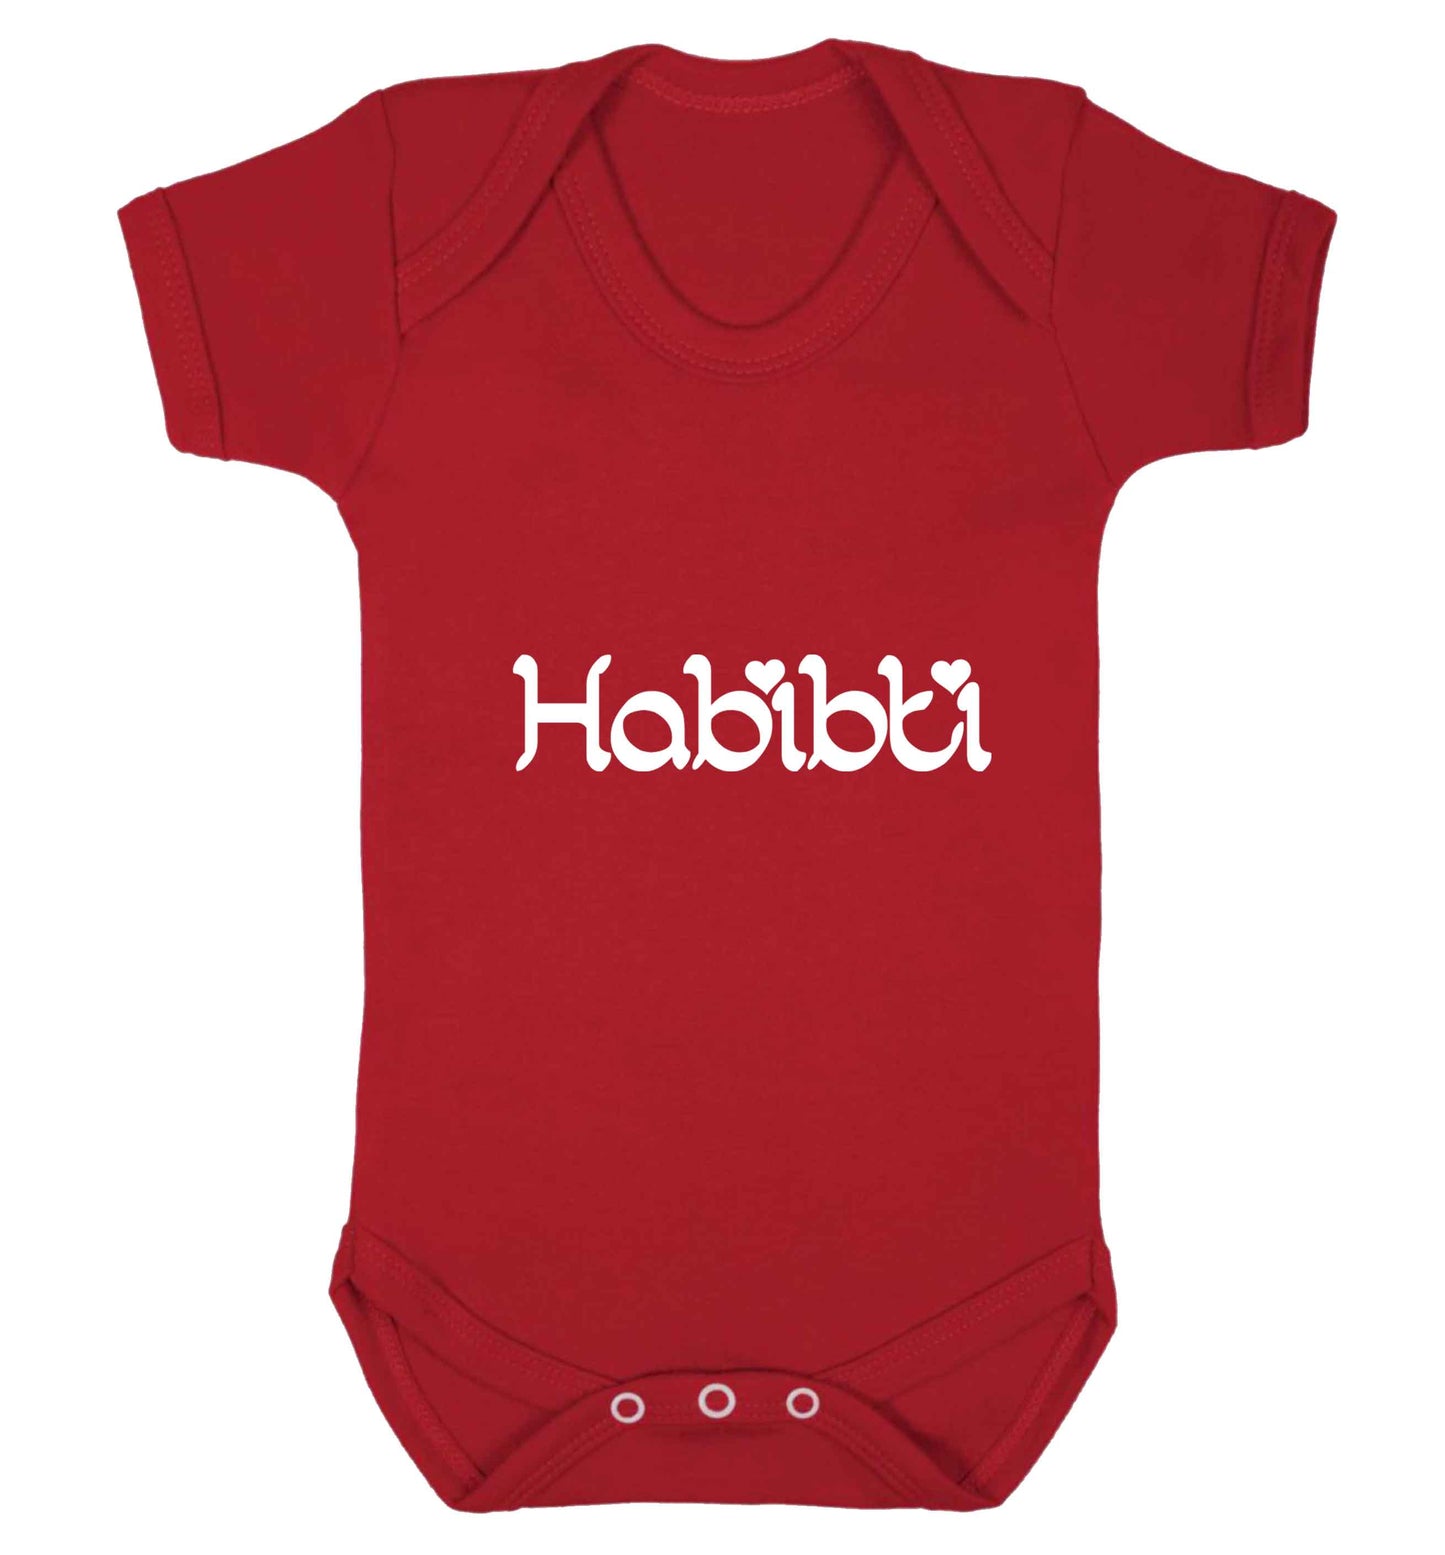 Habibiti baby vest red 18-24 months